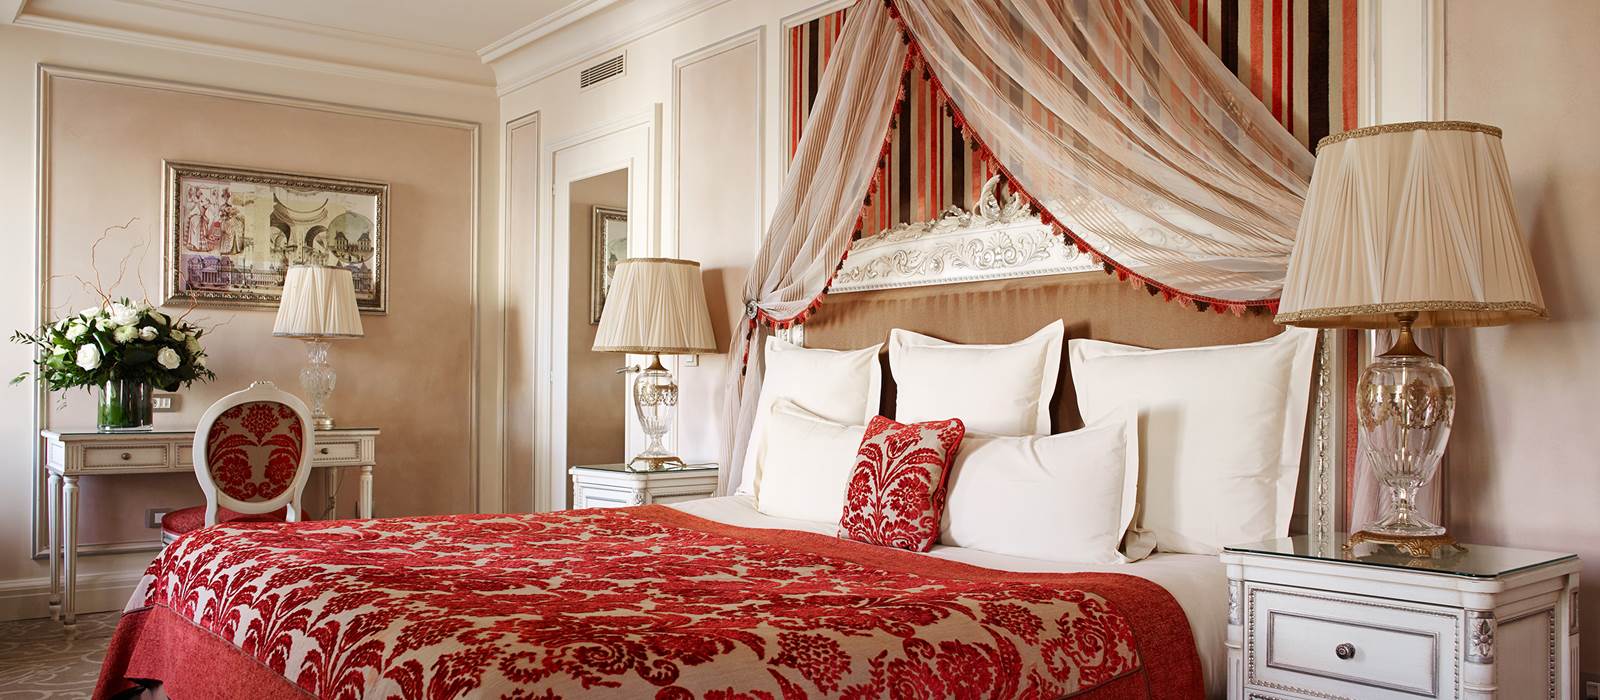 Executive & Deluxe Rooms Hotel Balzac Paris